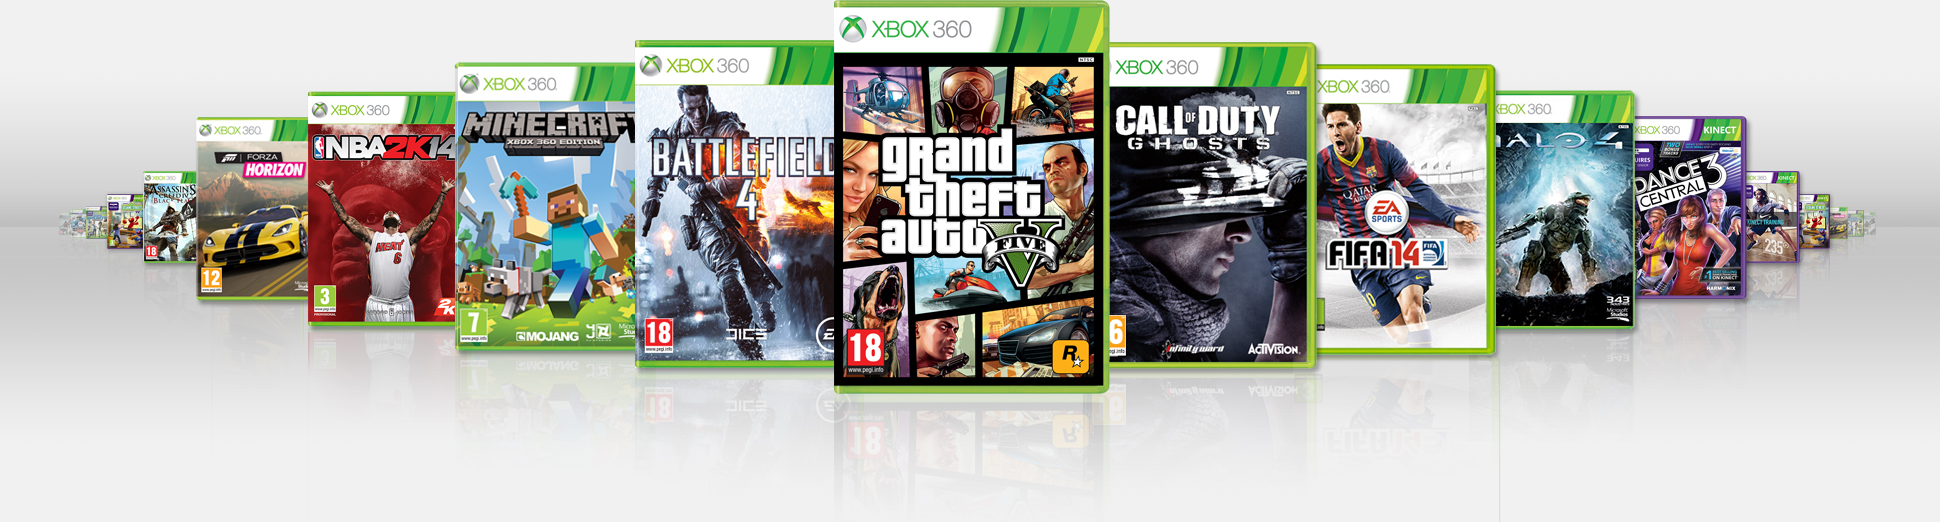 Игры можно играть на xbox 360. Диски для приставки Xbox 360. Диски на приставку Xbox 360 s. Иггрын а Xbox 360. Игры на приставку Xbox 360.